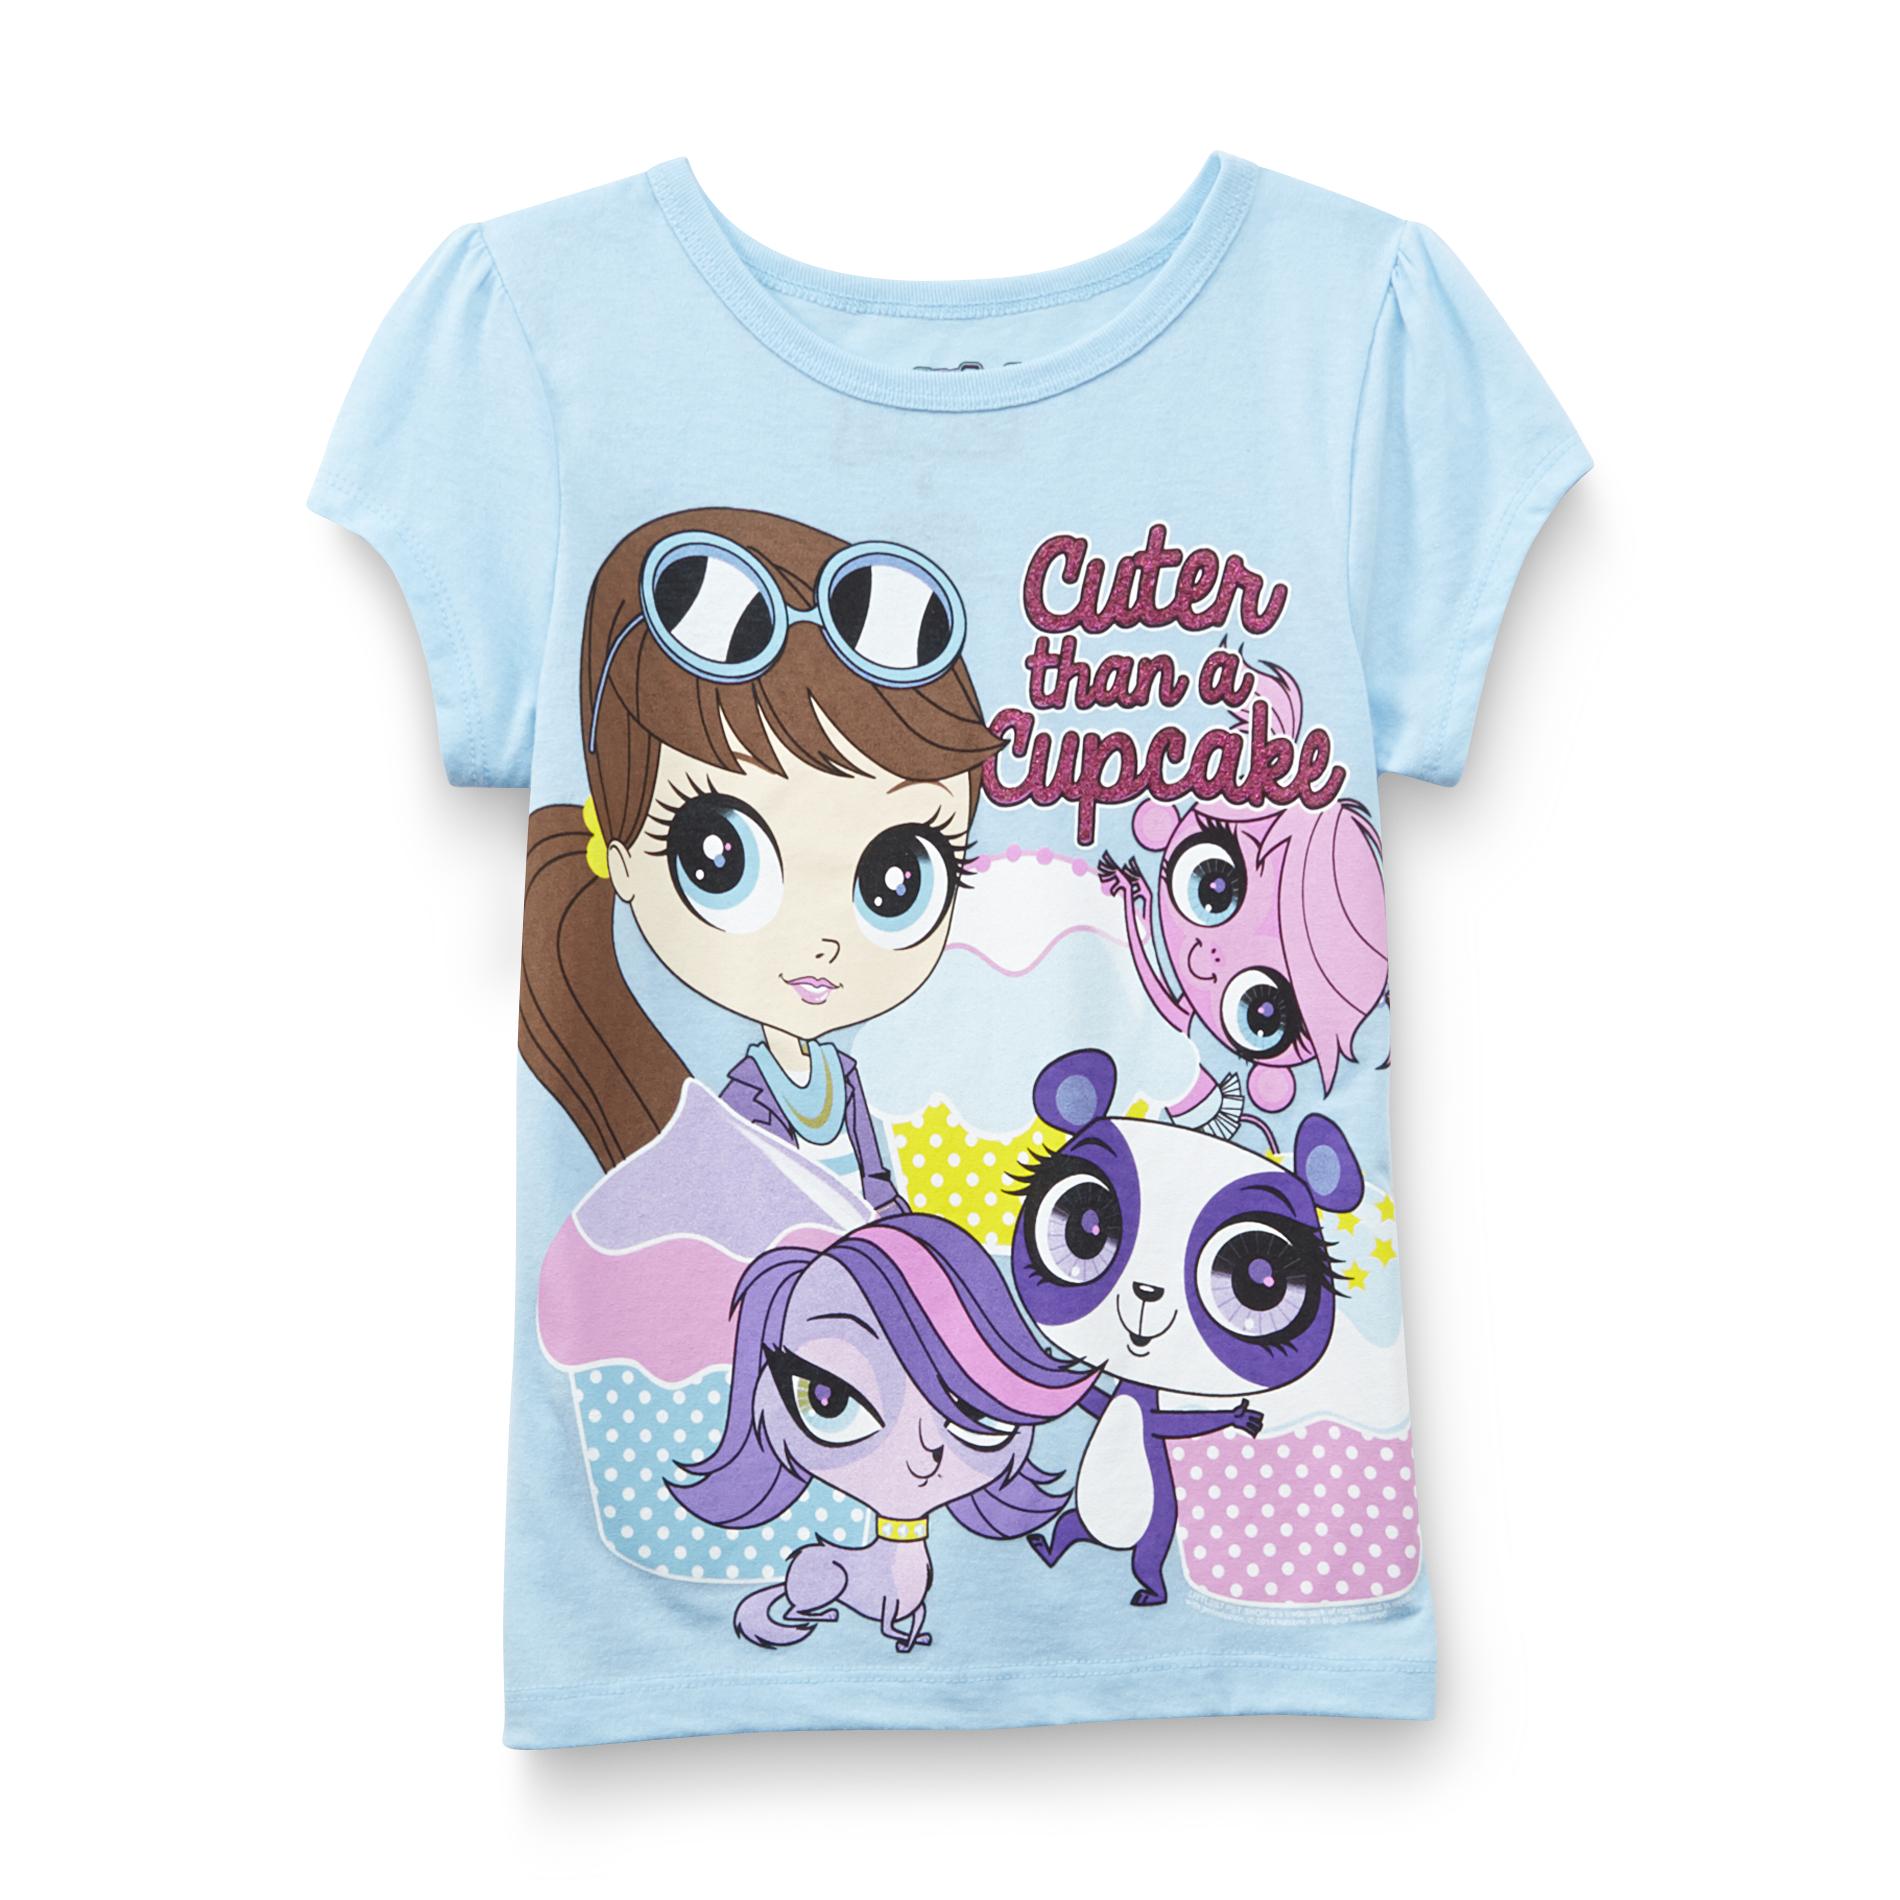 Littlest Pet Shop Girl's Graphic T-Shirt